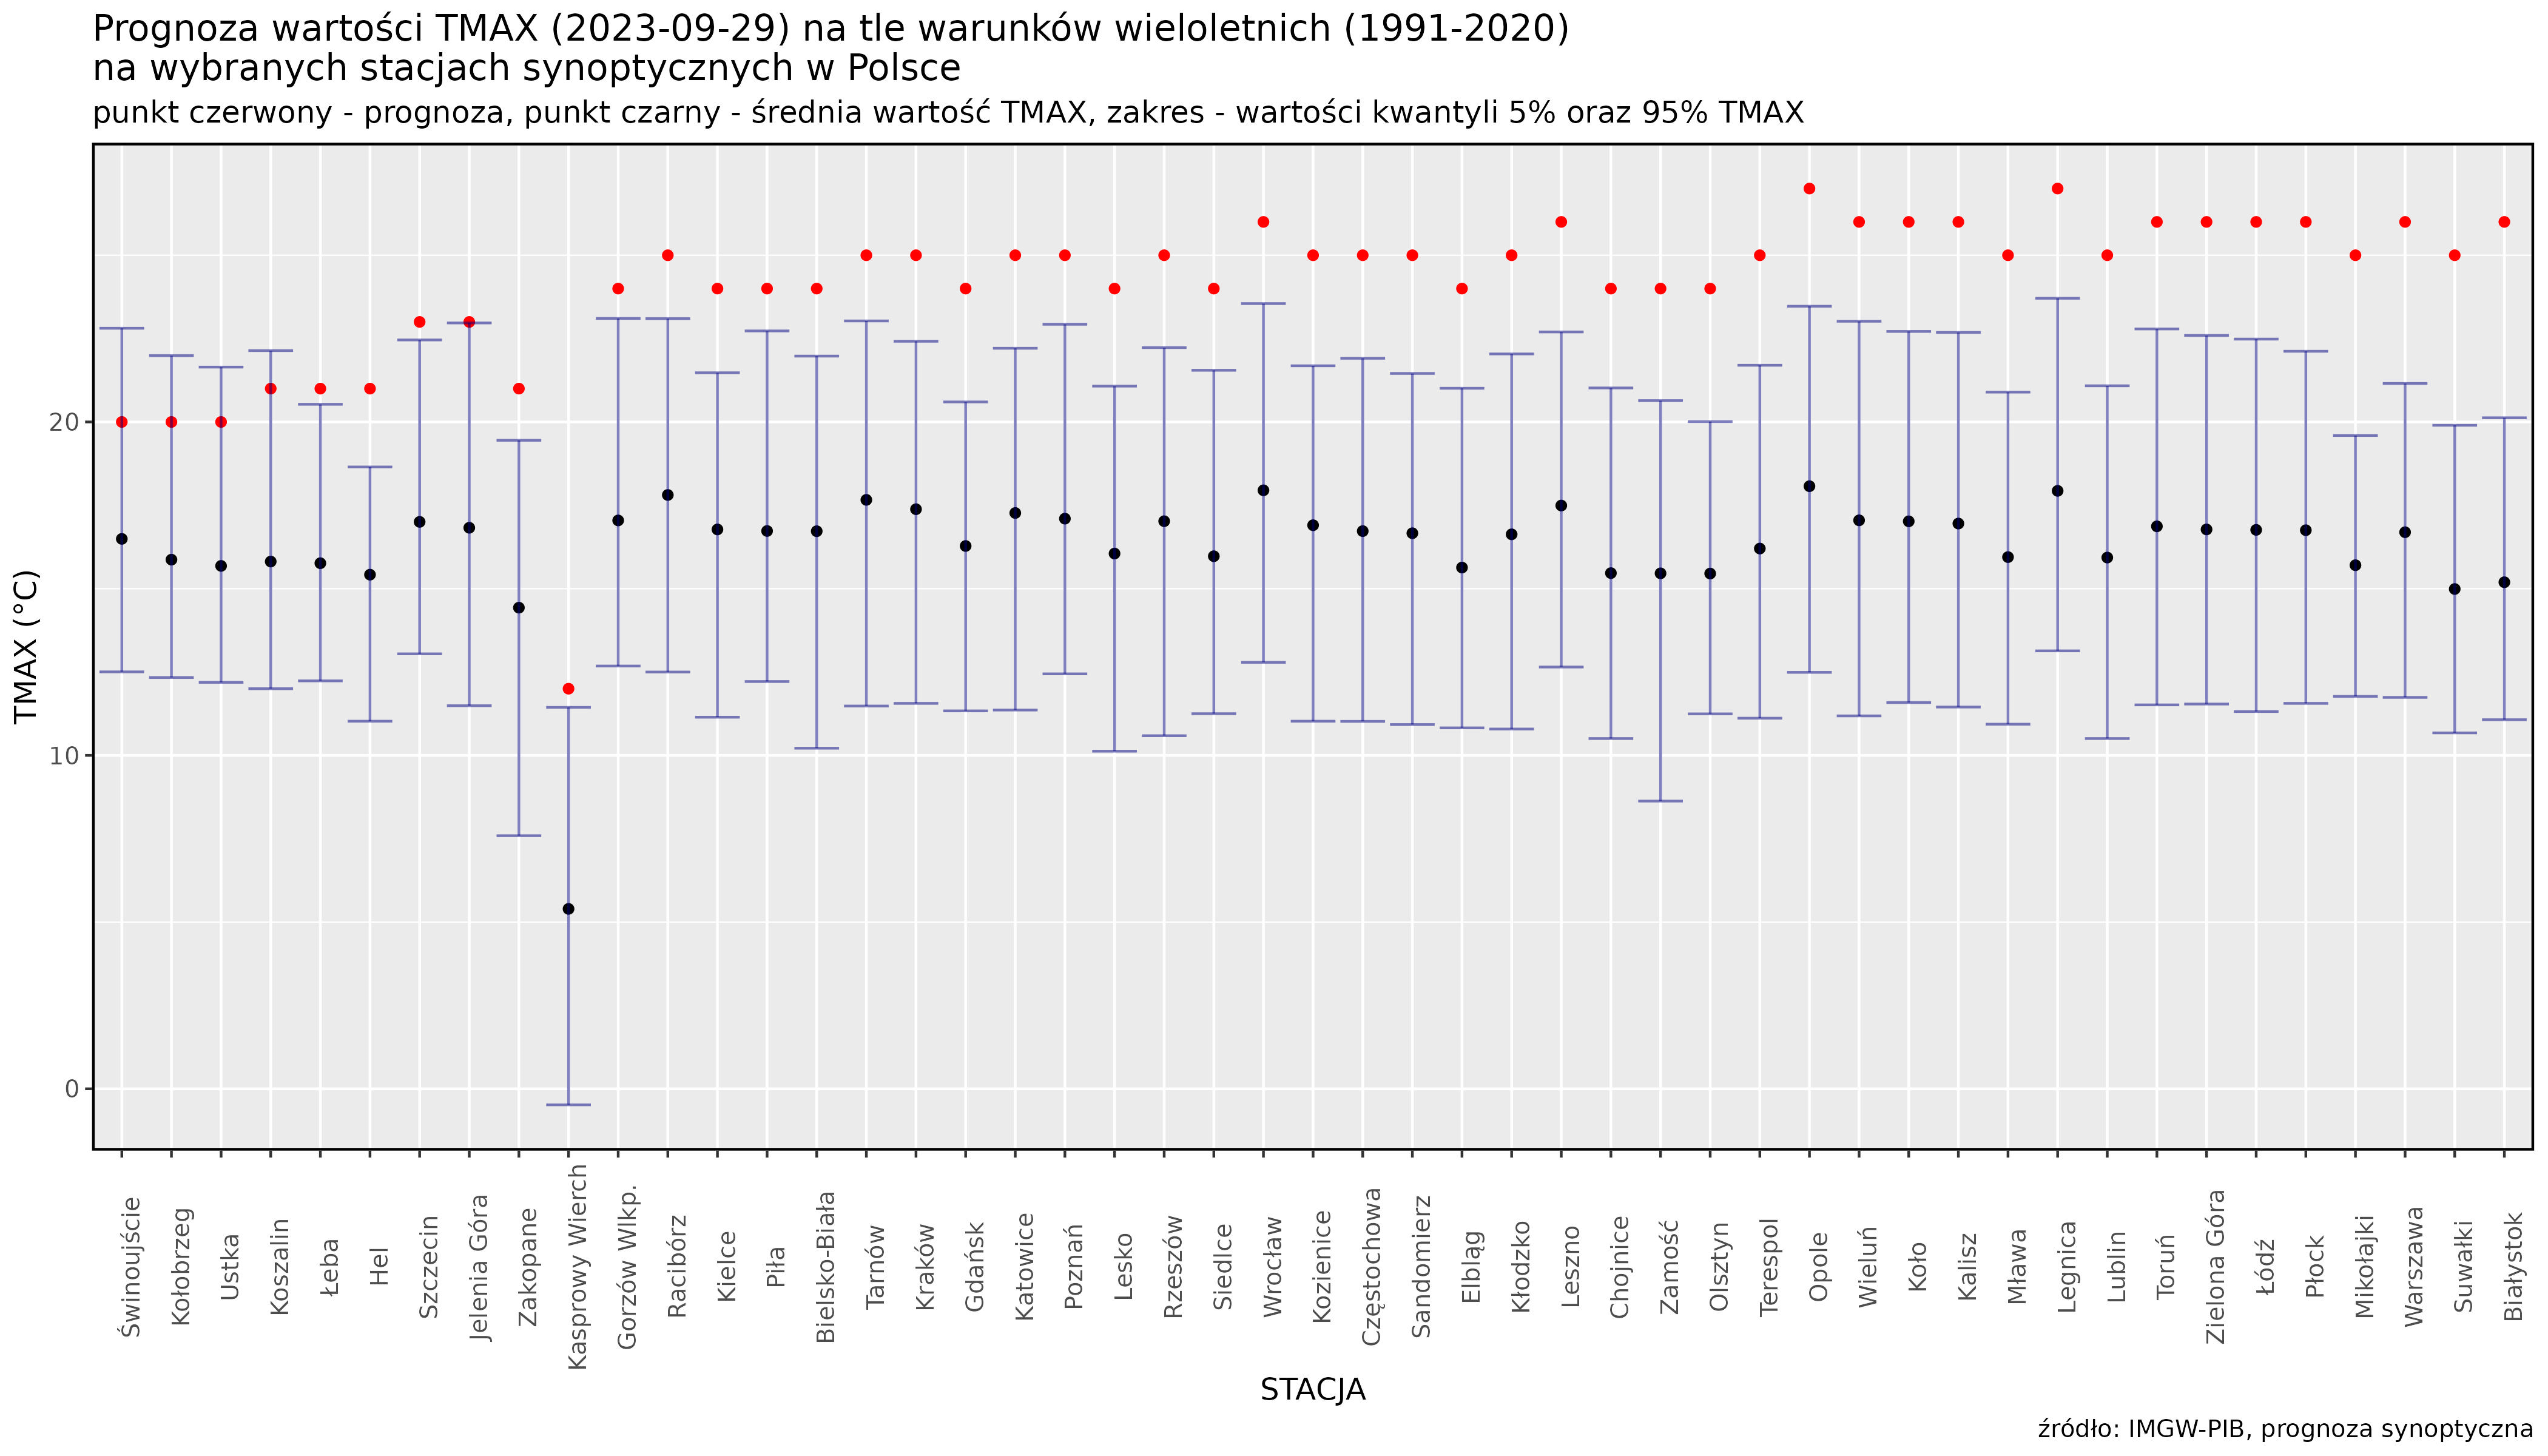 Prognoza wartości TMAX (2023-09-29) na tle warunków wieloletnich (1991-2020). Kolejność stacji według różnicy TMAX prognoza – TMAX z wielolecia.